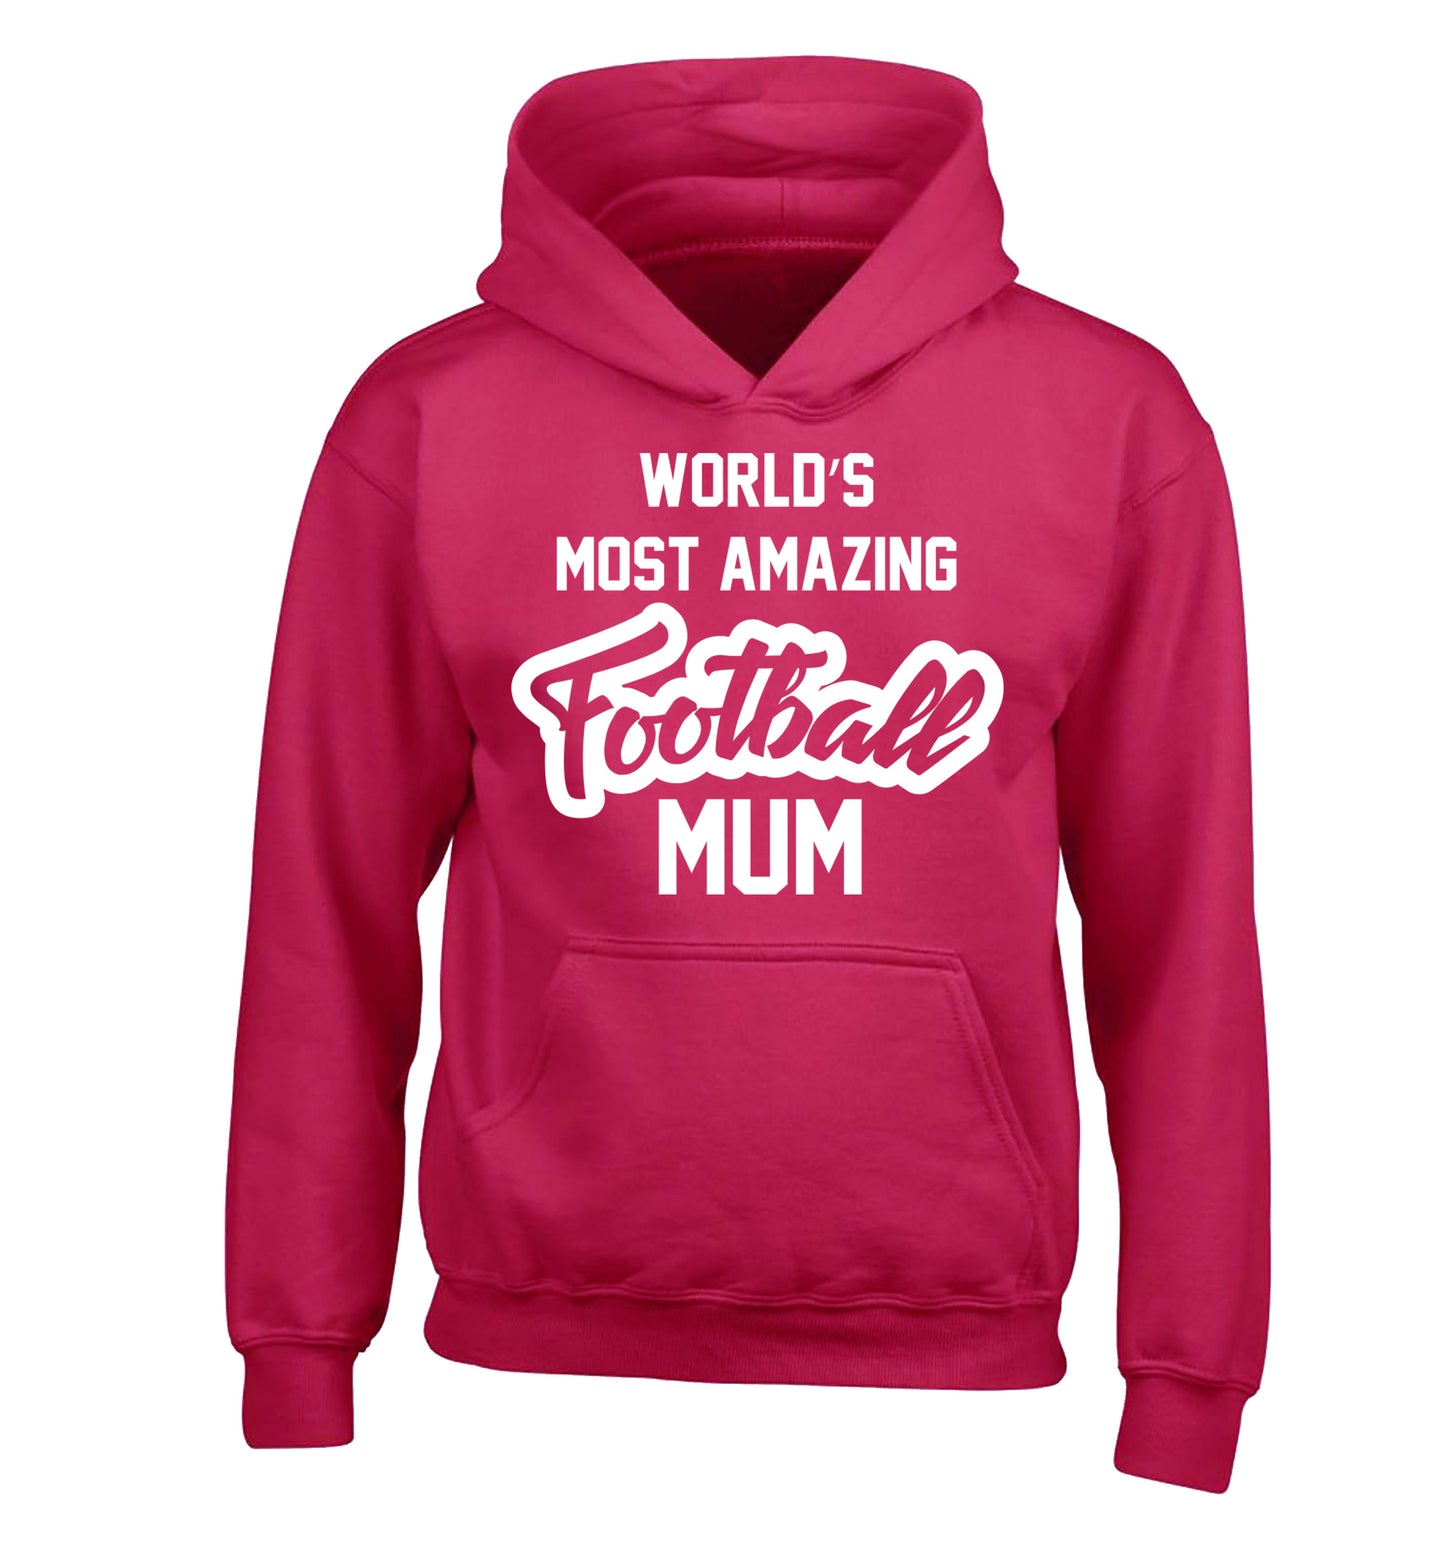 Worlds most amazing football mum children's pink hoodie 12-14 Years